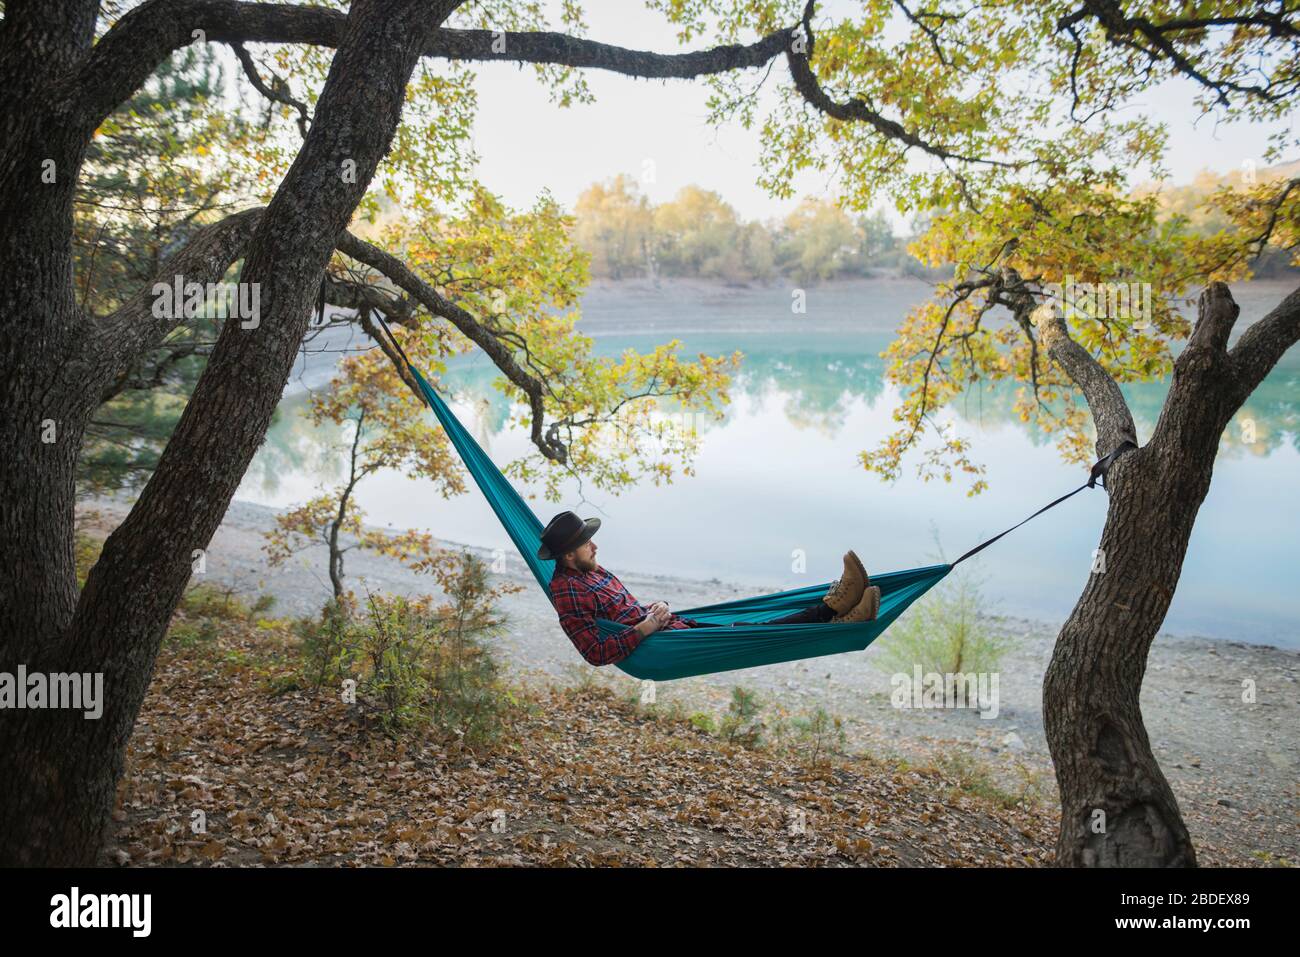 Italy, Man lying in hammock near lake Stock Photo